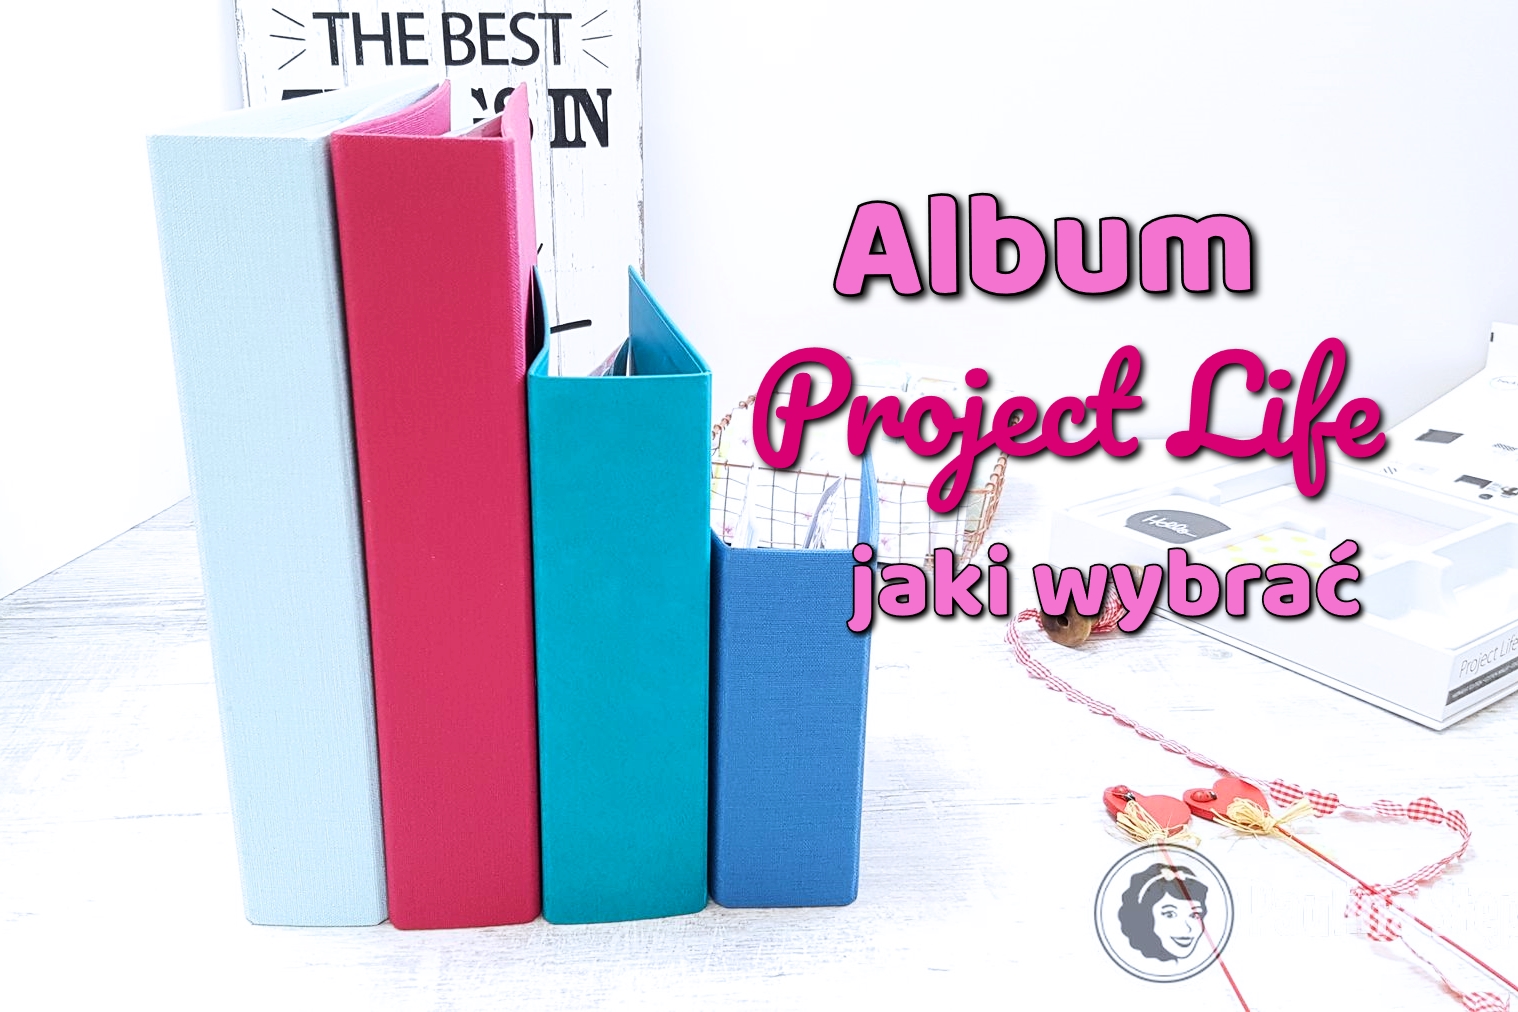 Album Project Life jaki wybrać